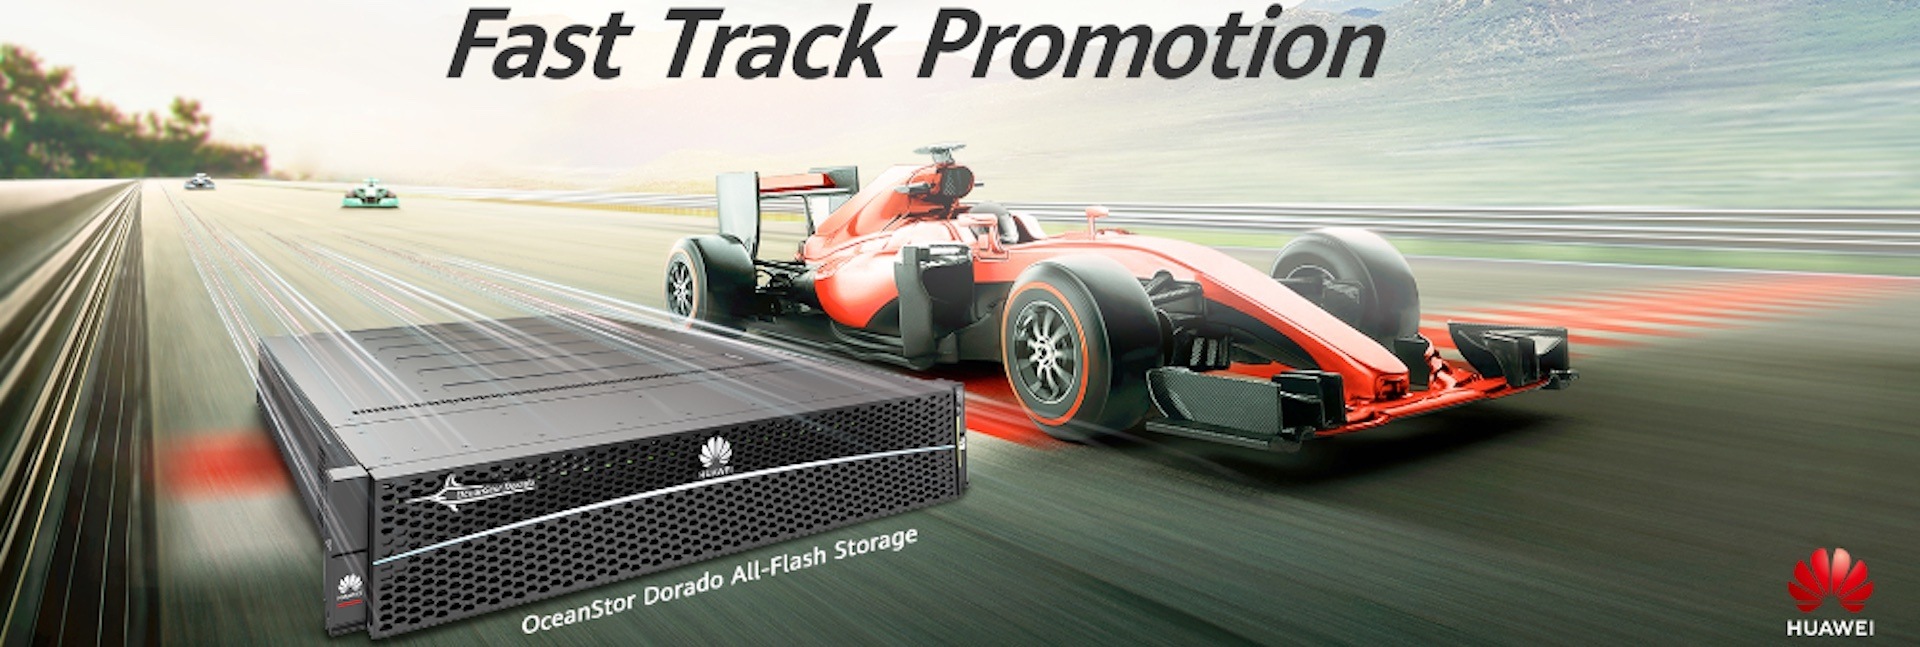 fast track promotion desktop